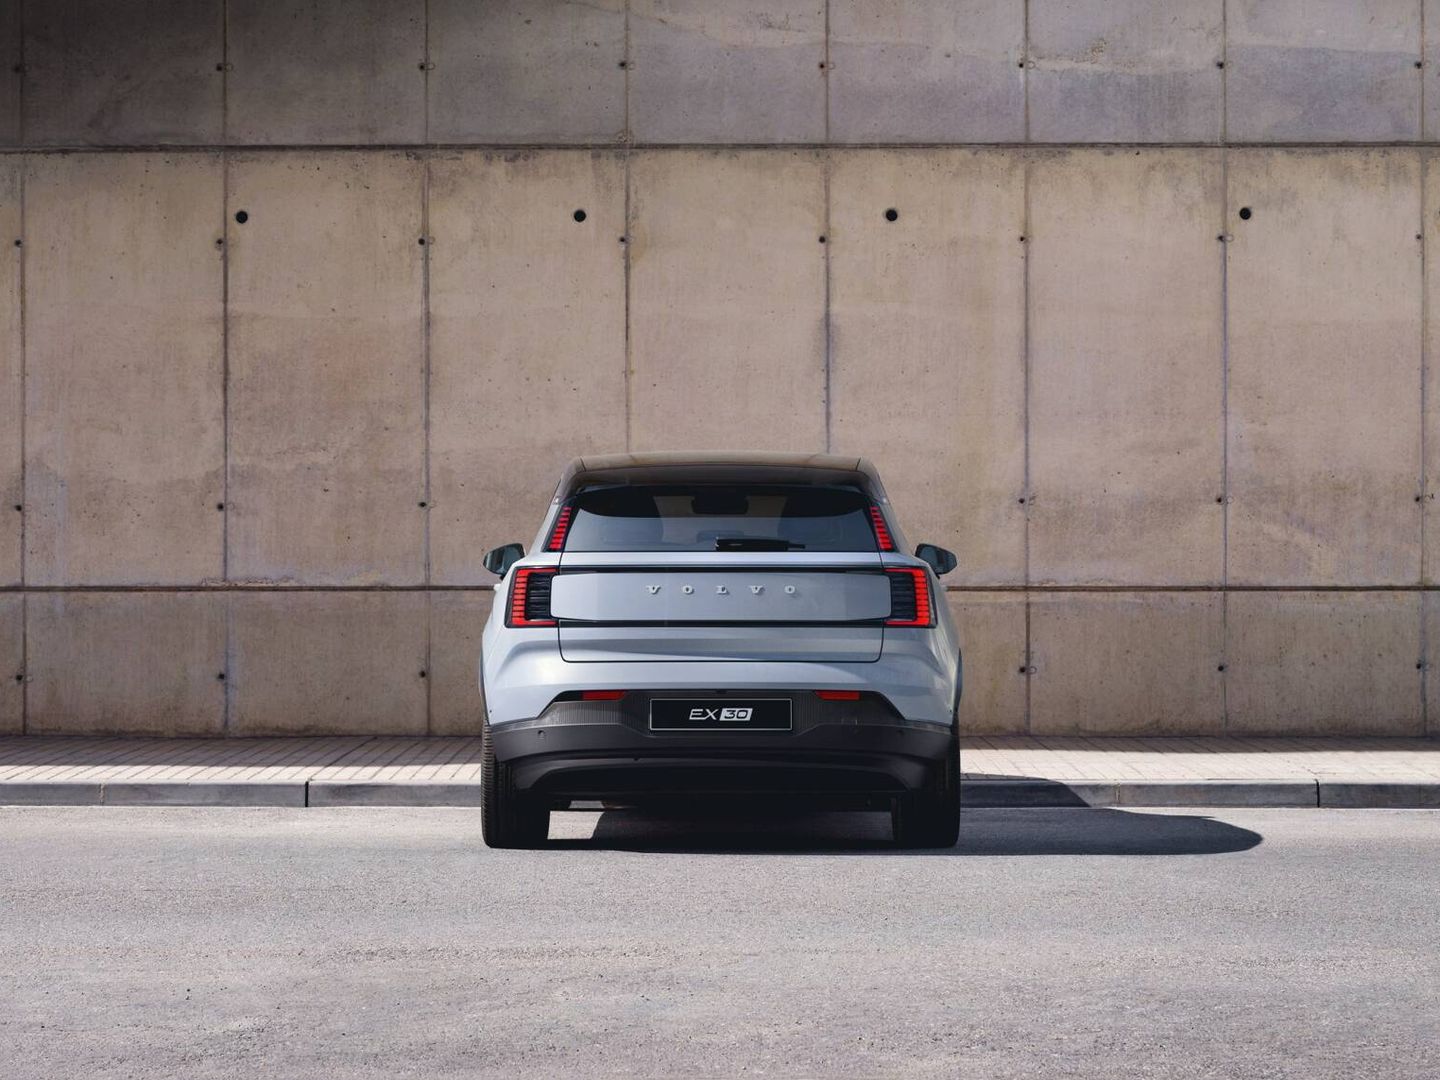 El Volvo EX30 comparte plataforma y mecánica con el Smart #1, de tamaño y concepto similar.